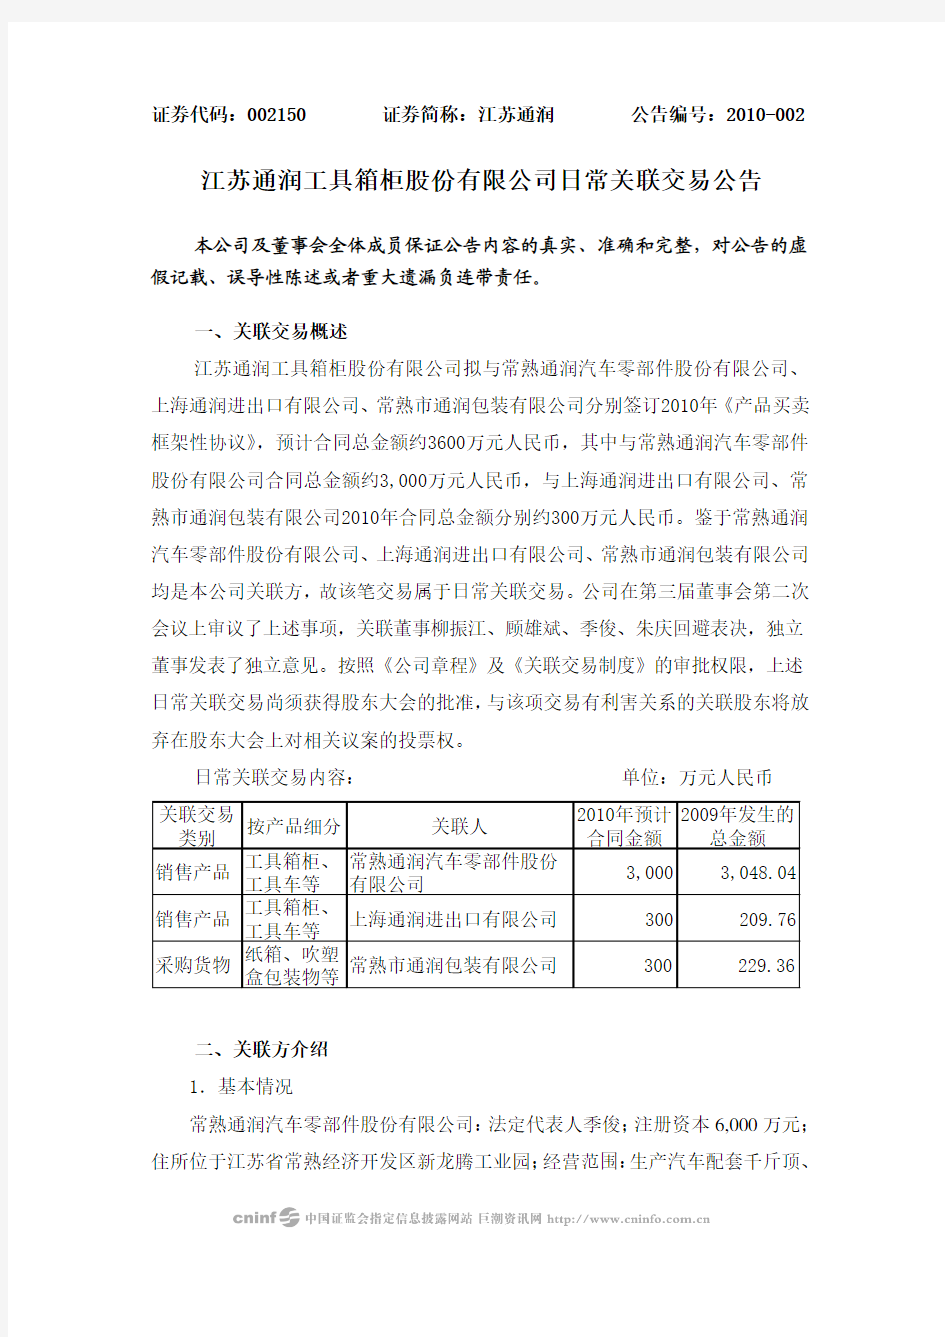 江苏通润工具箱柜股份有限公司日常关联交易公告